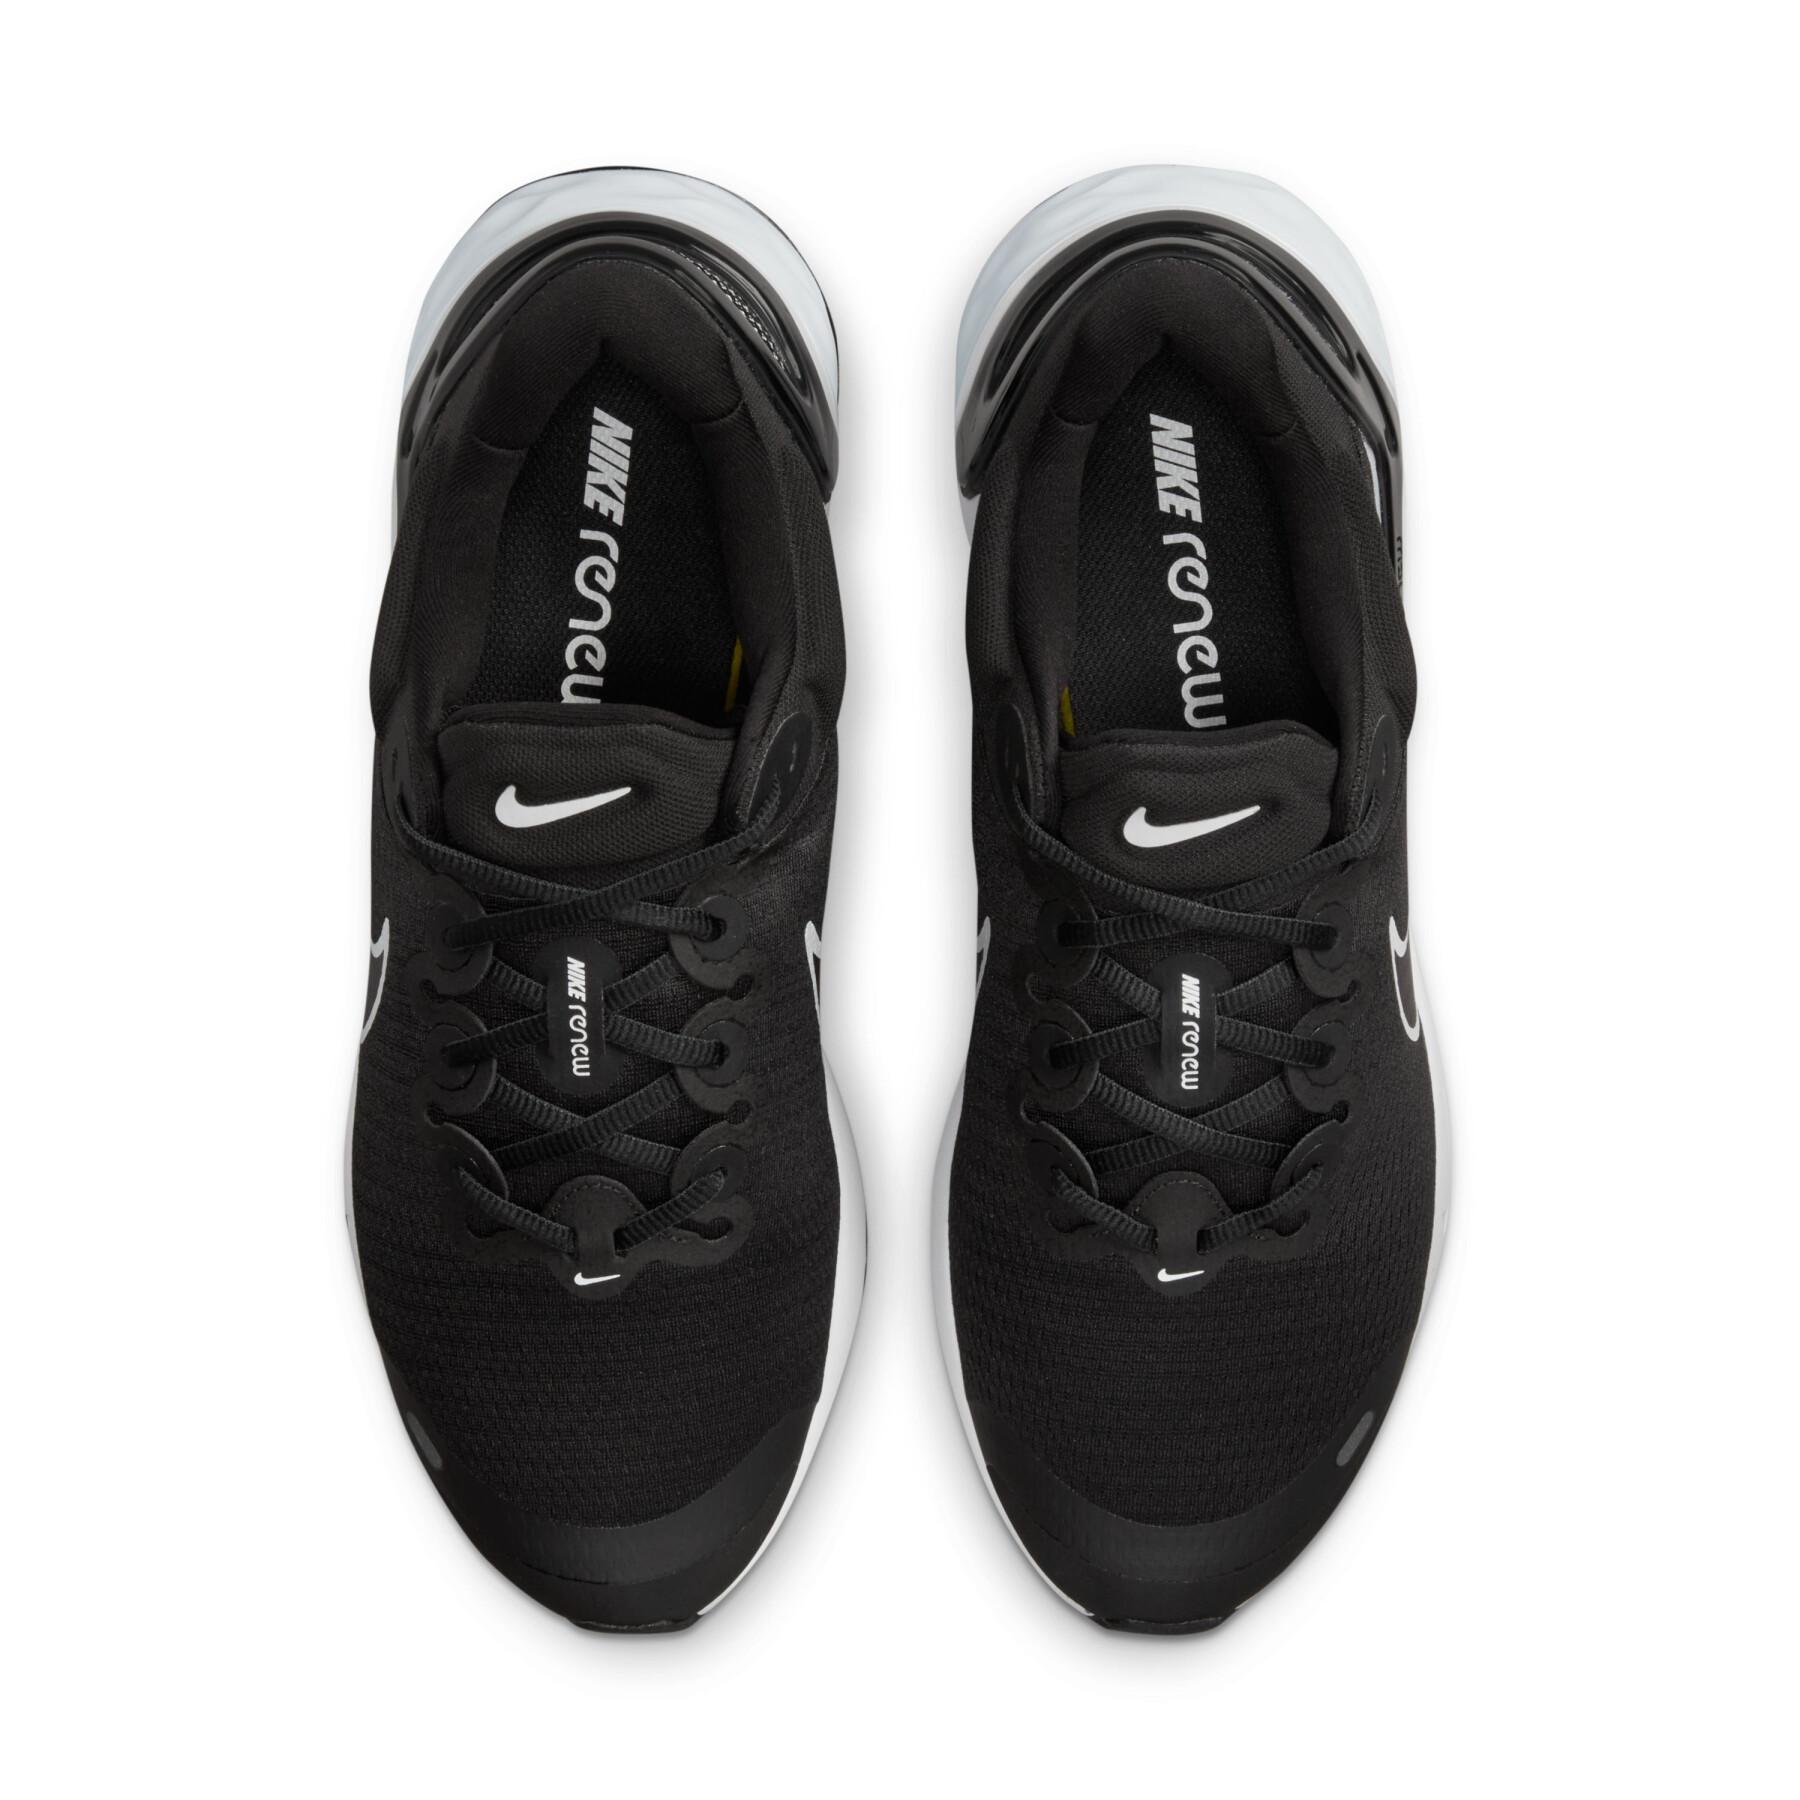 Sapatos de corrida Nike Renew Run 3